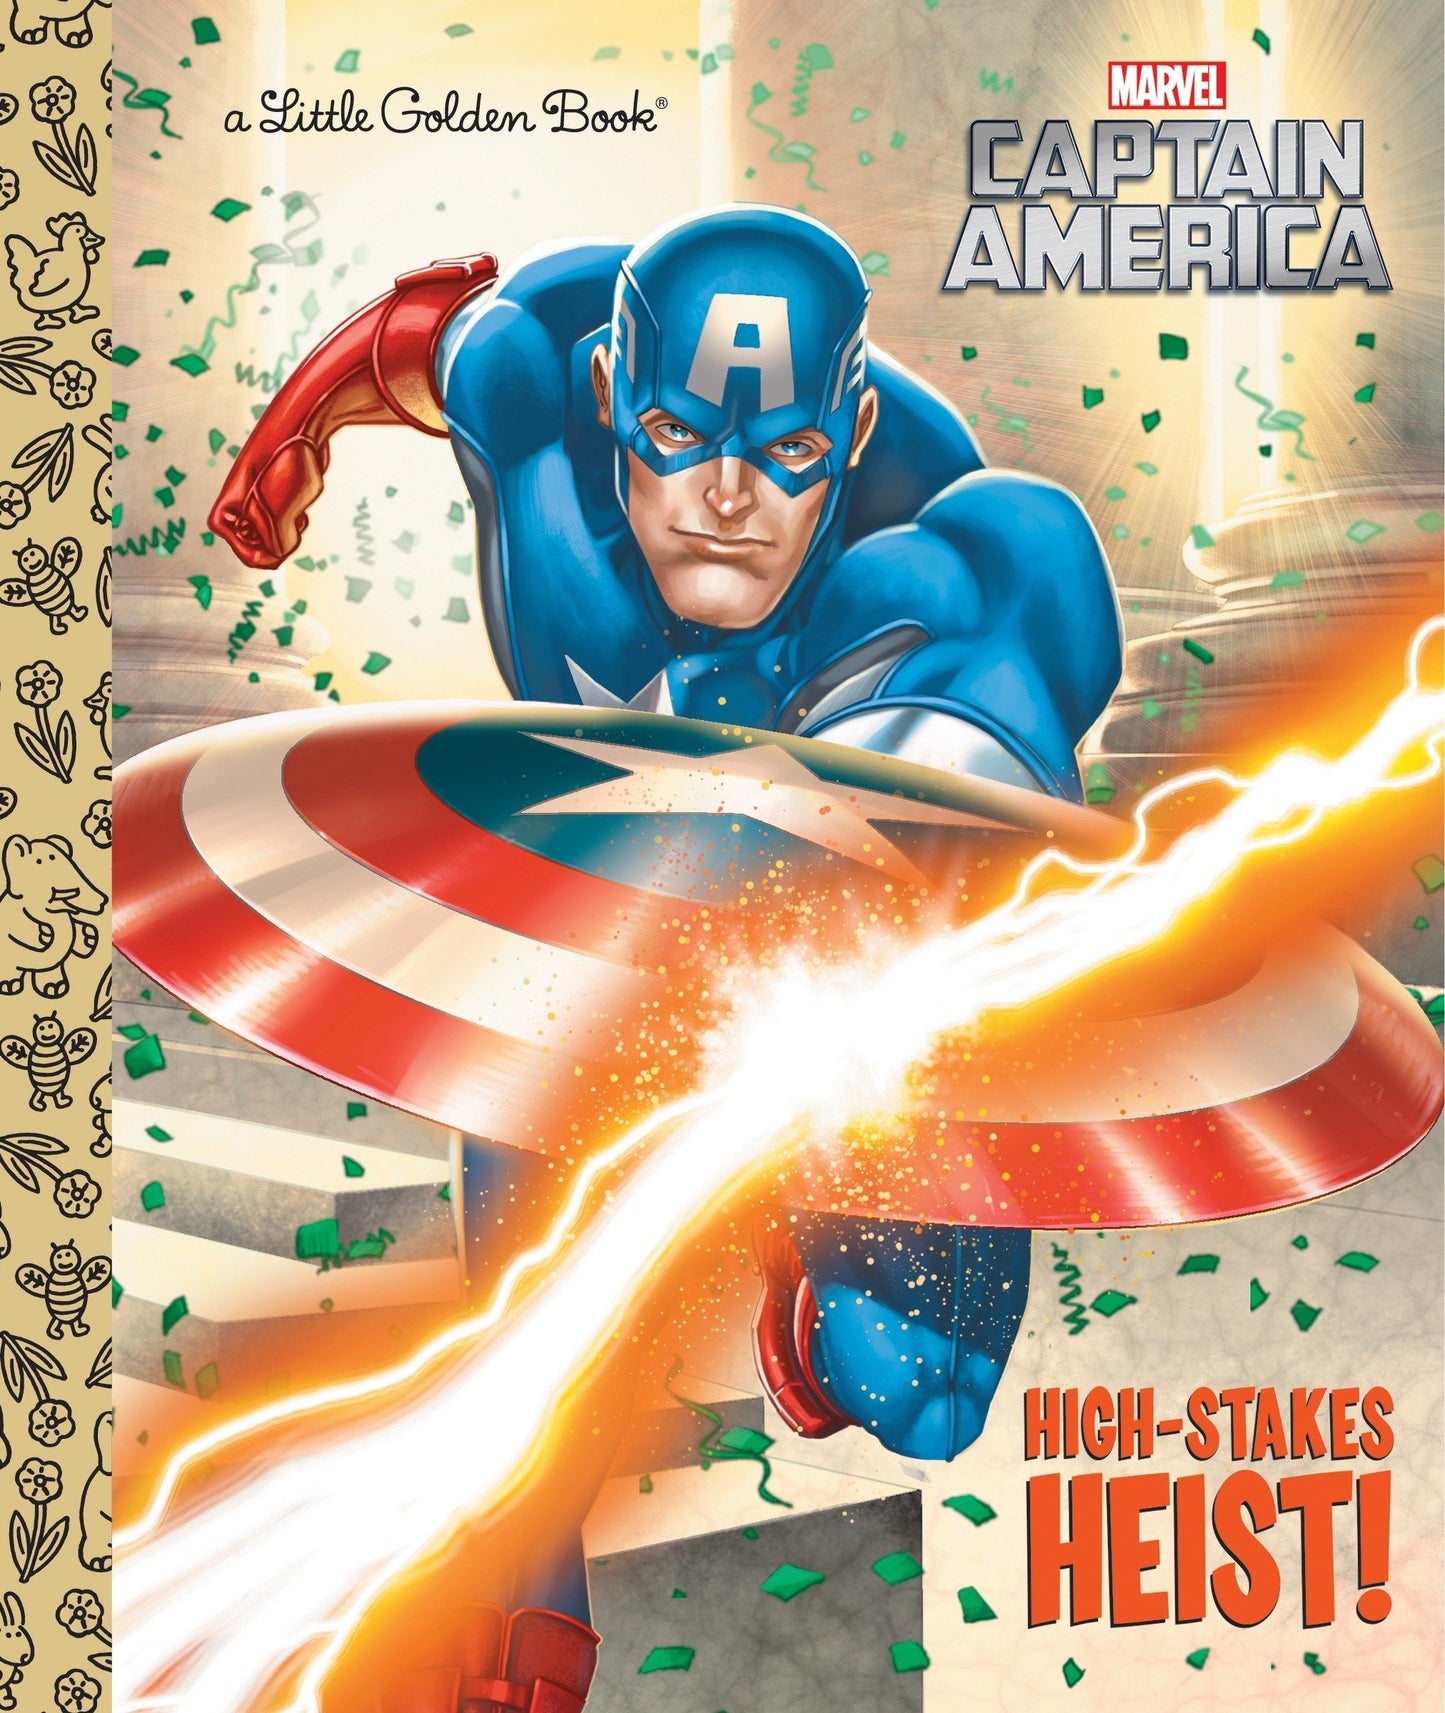 Little Golden Book Marvel Captain America High-Stakes Heist